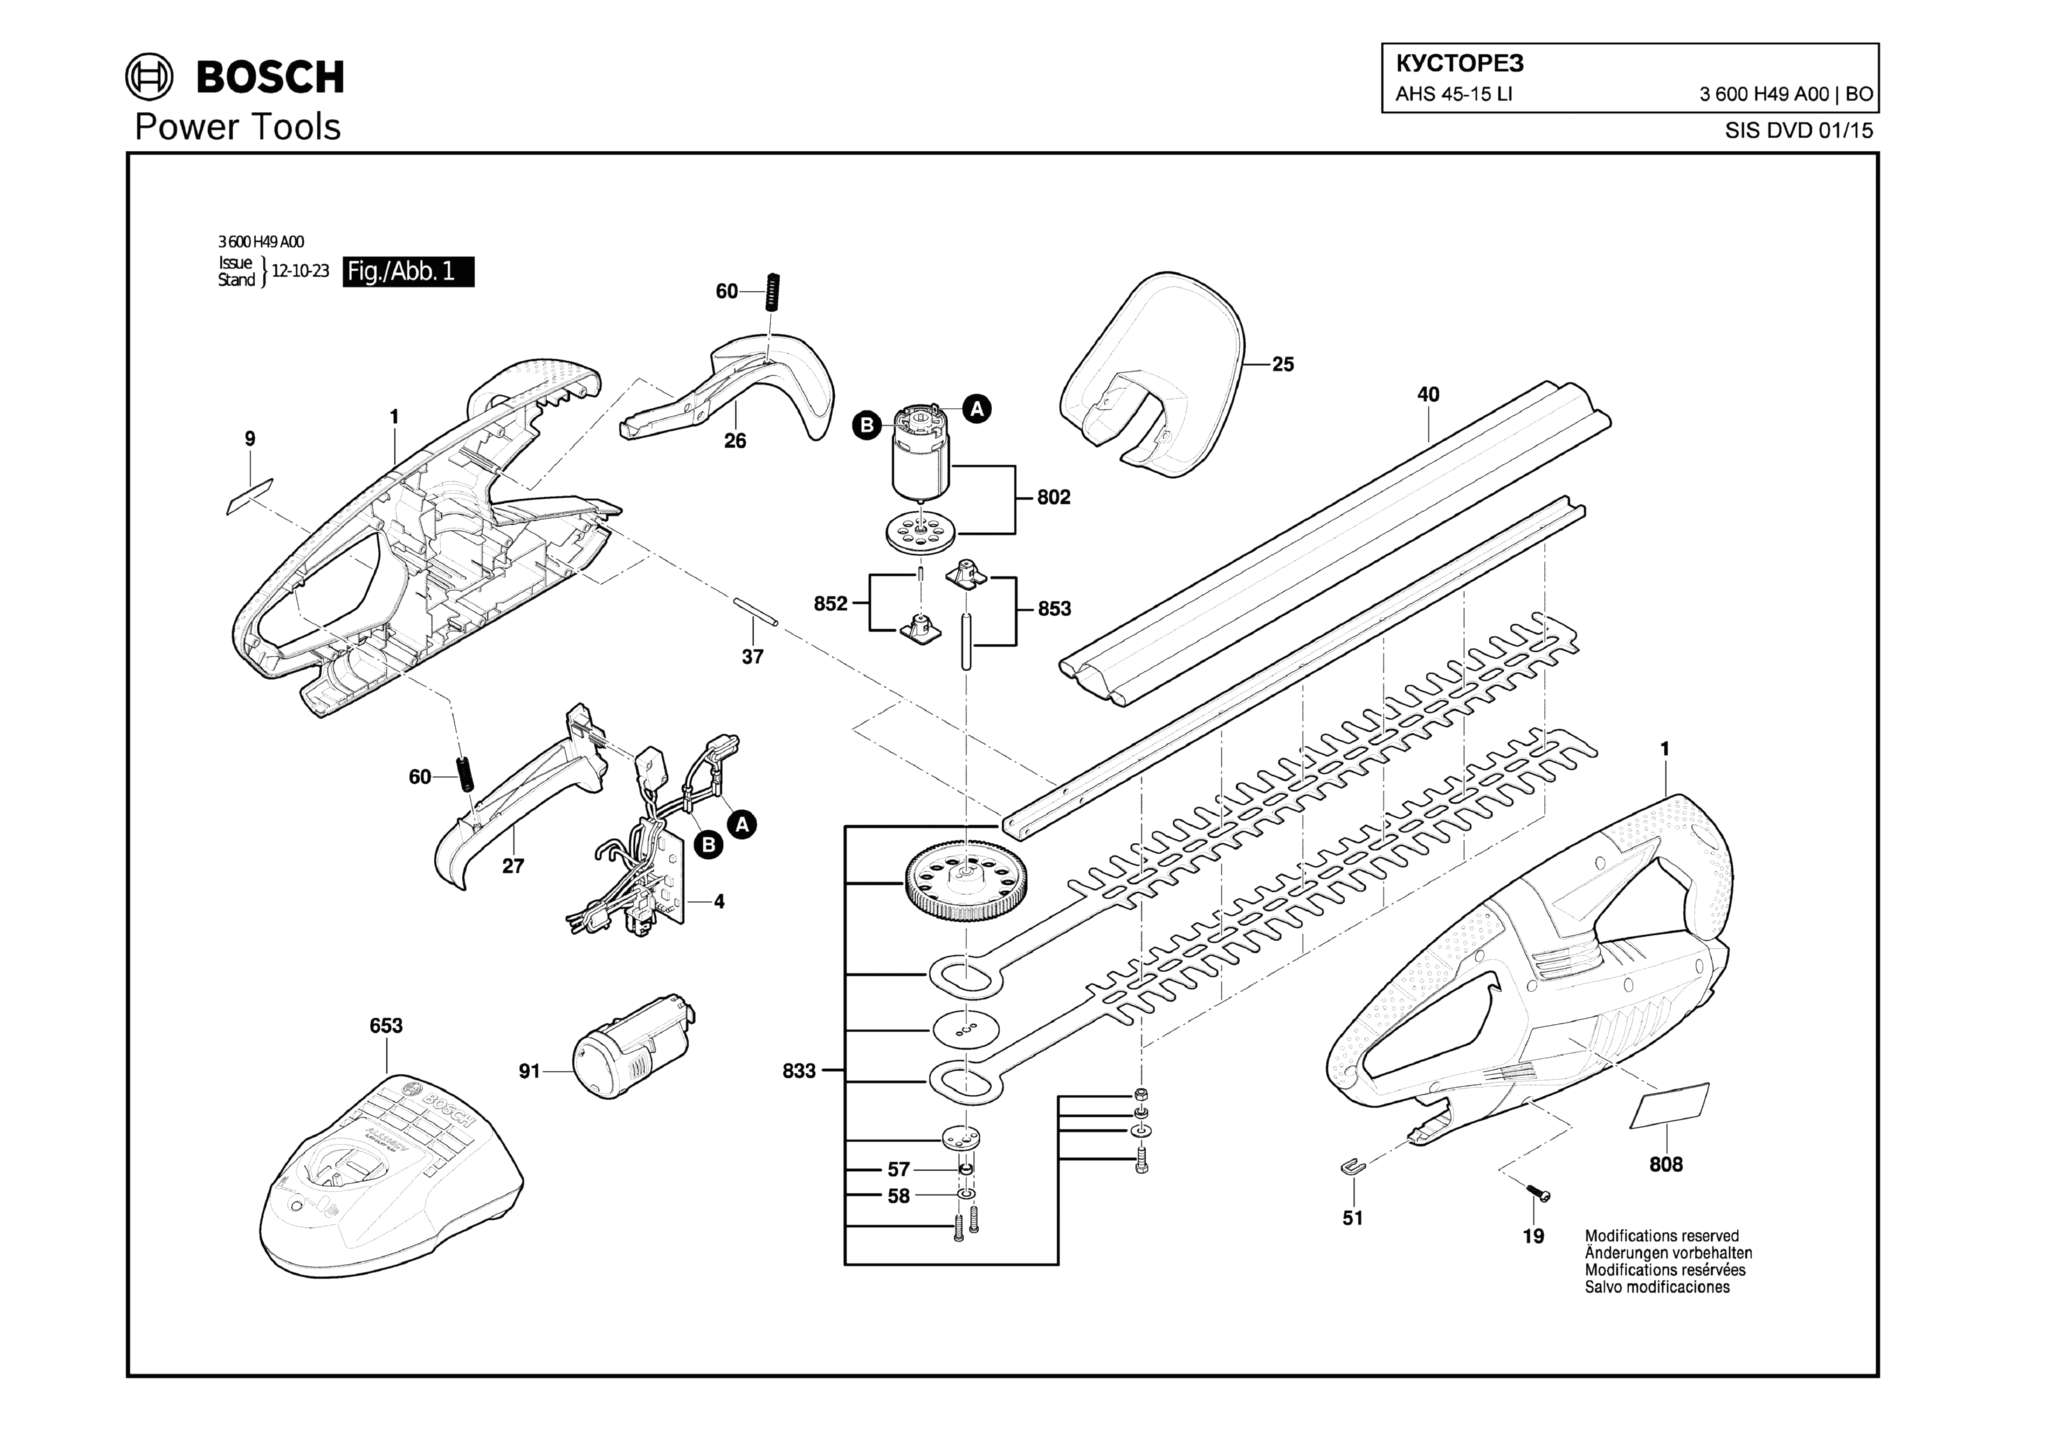 Запчасти, схема и деталировка Bosch AHS 45-15 LI (ТИП 3600H49A00)